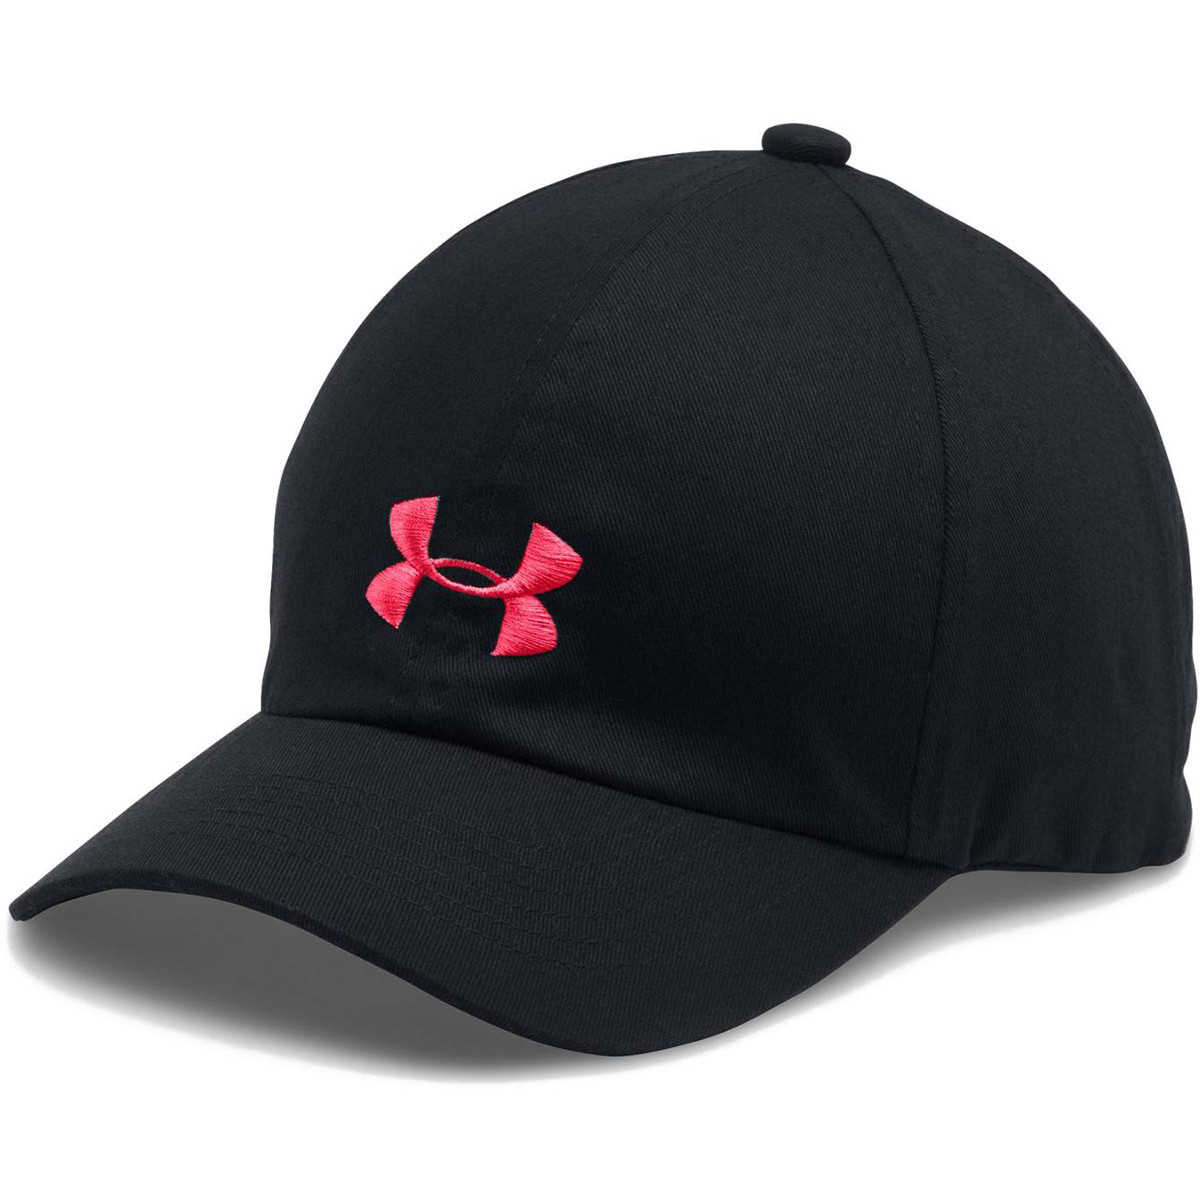 Nowa czapka Under Armour Girl's Cap black :: Sklep Sportowy - outlet  sportowy, koncówki kolekcji, wyprzedaże, narty, deski, wiązania, sprzet  narciarski, buty sportowe